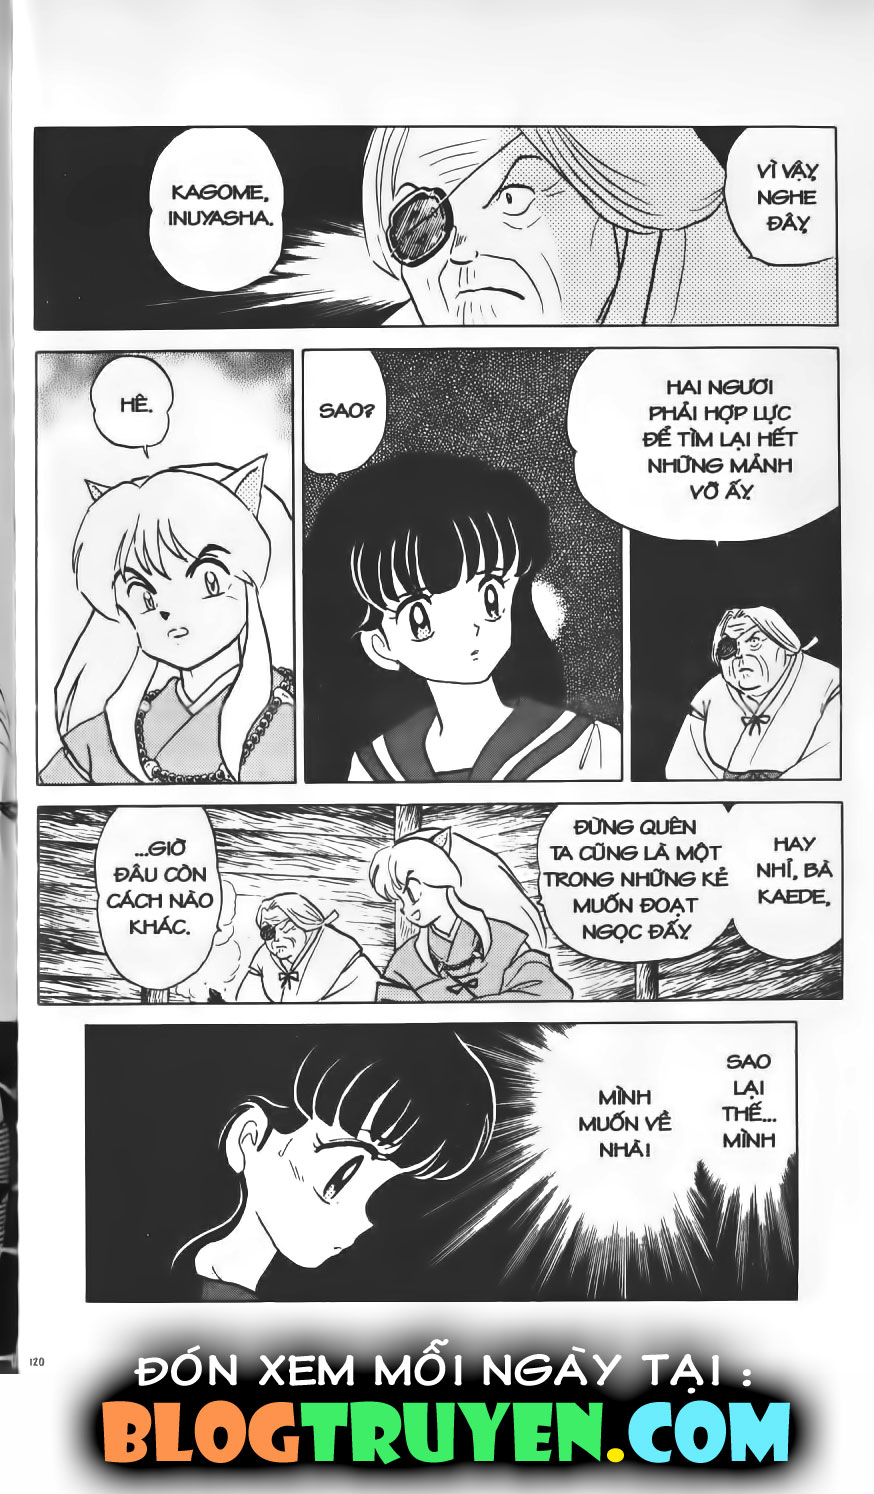 Inuyasha vol 01.5 trang 18